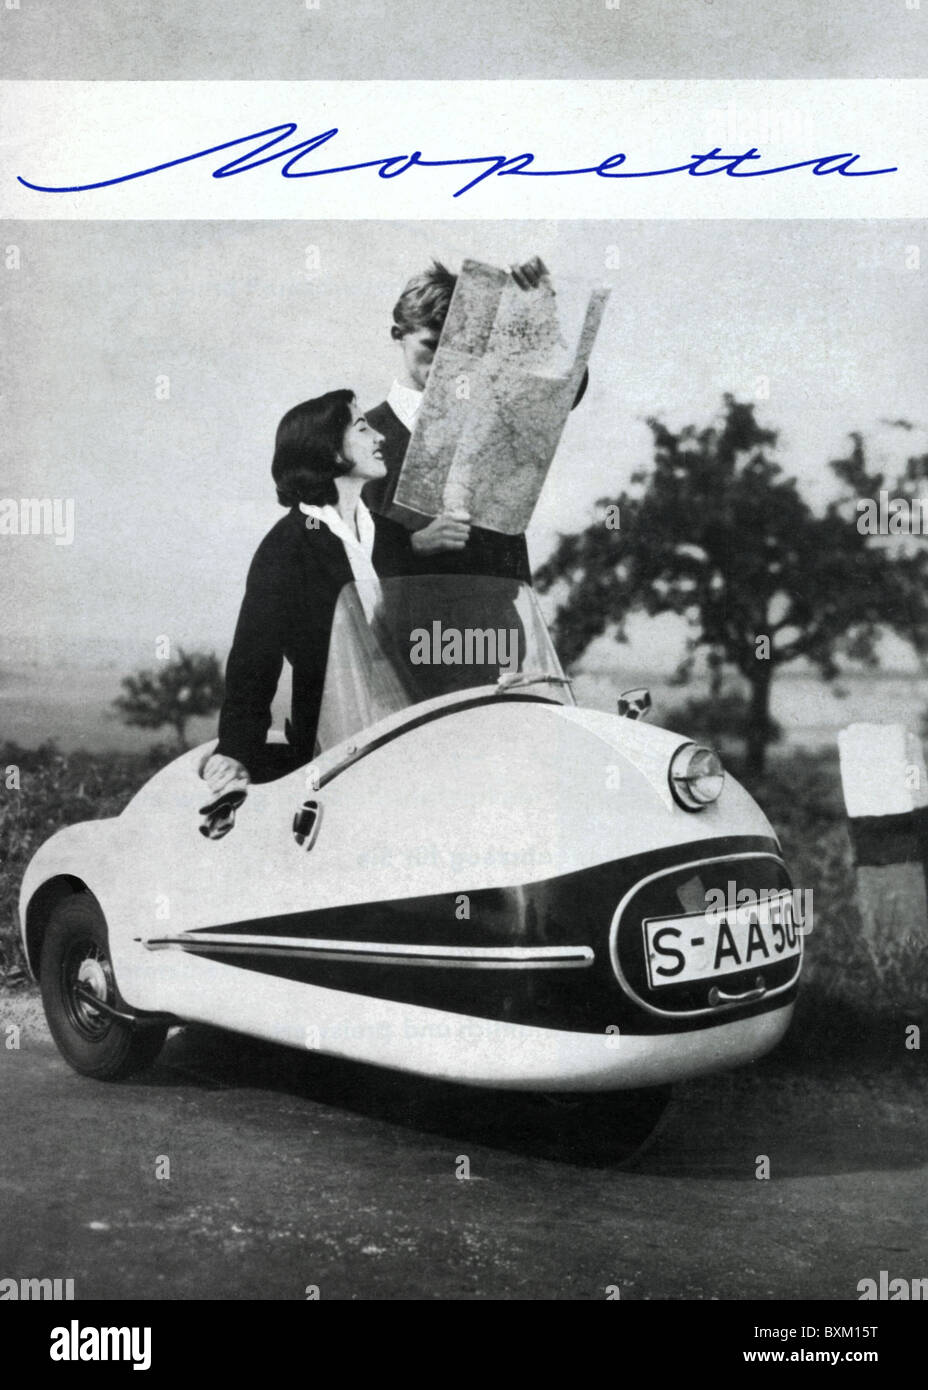 Transport / transport, voiture, automobile, variantes de véhicule, petite voiture de Mopetta, plus petite voiture dans le monde, Allemagne, 1958, droits additionnels-Clearences-non disponible Banque D'Images